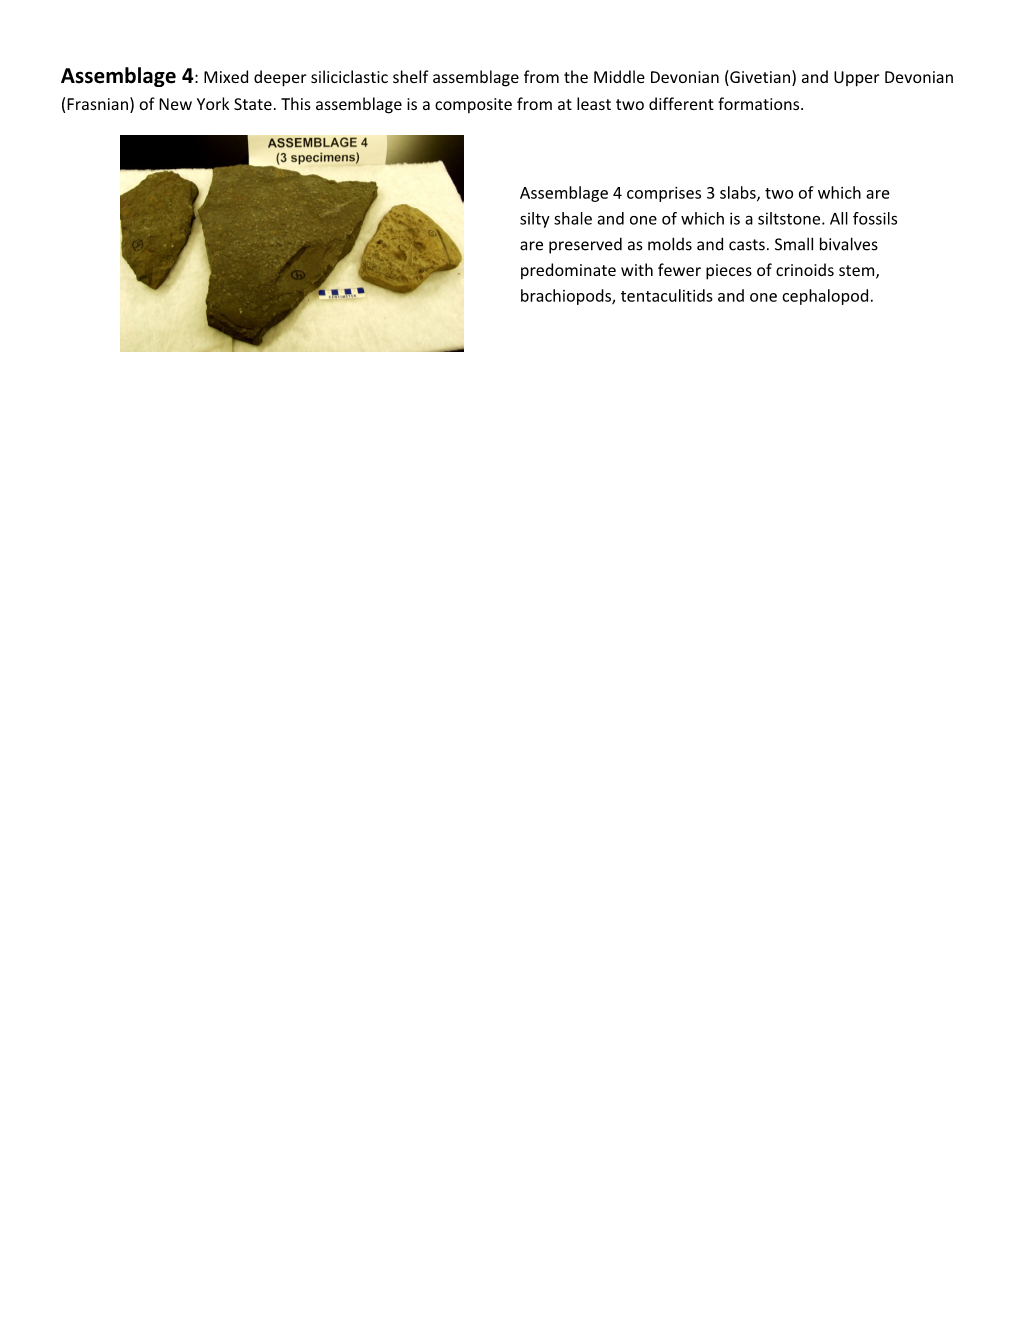 Paleoecology Lab: Description of Assemblages